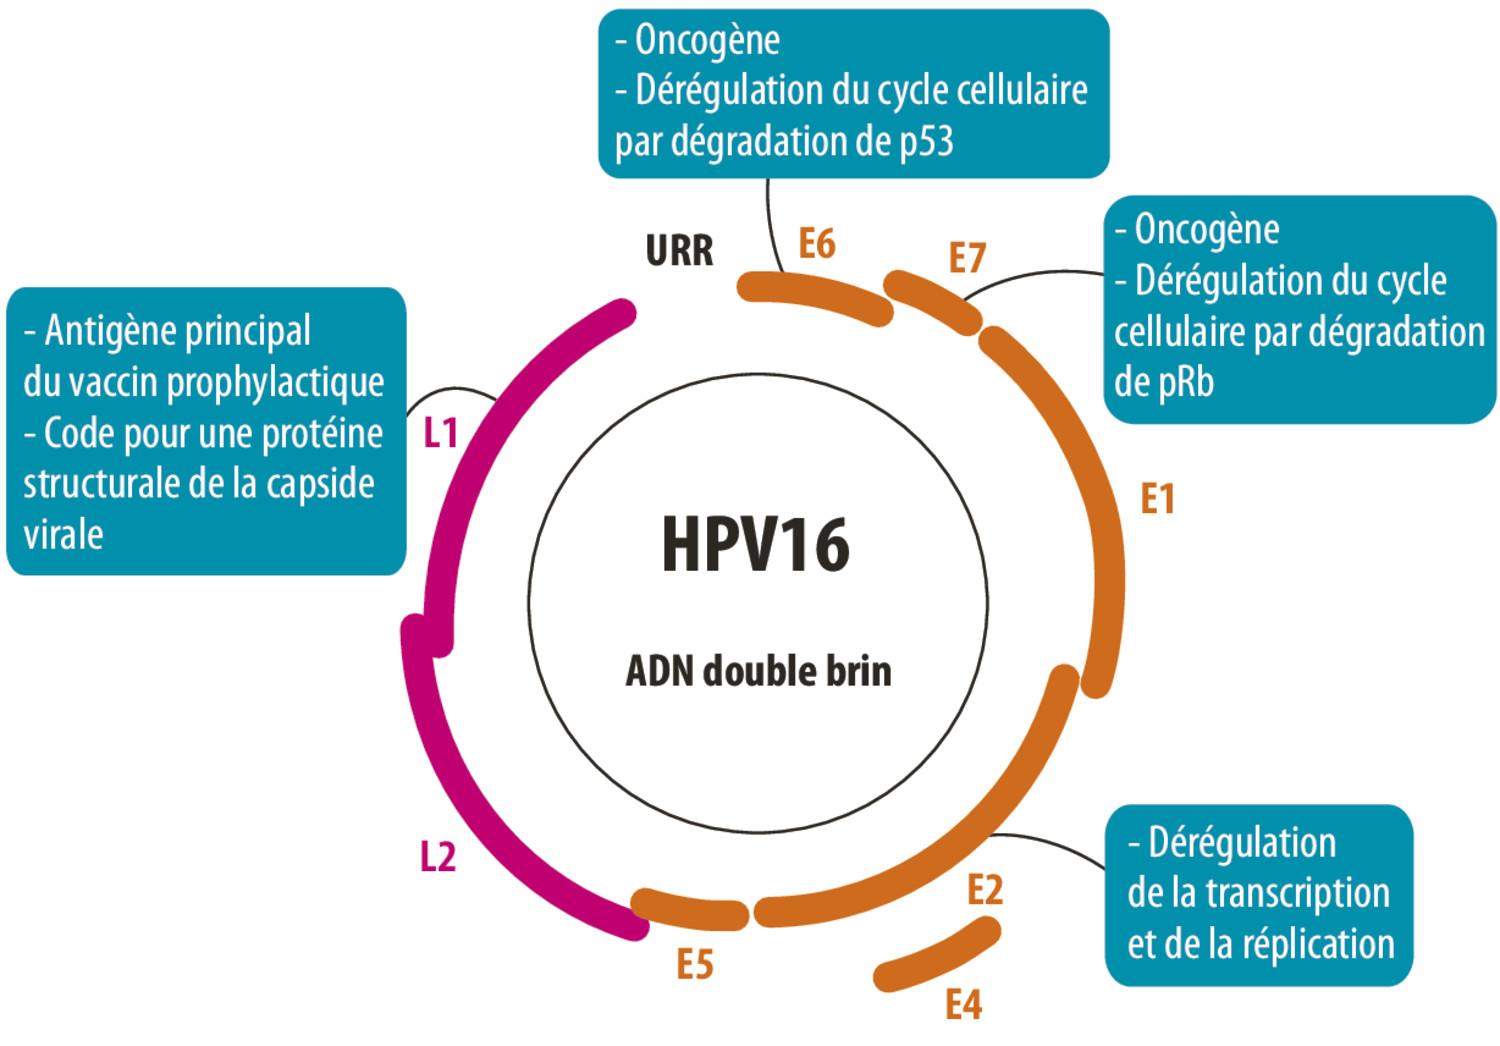 Cancers des voies aérodigestives supérieures et vaccinations prophylactiquesou thérapeutiques anti-HPV : où en est-on ? - Figure